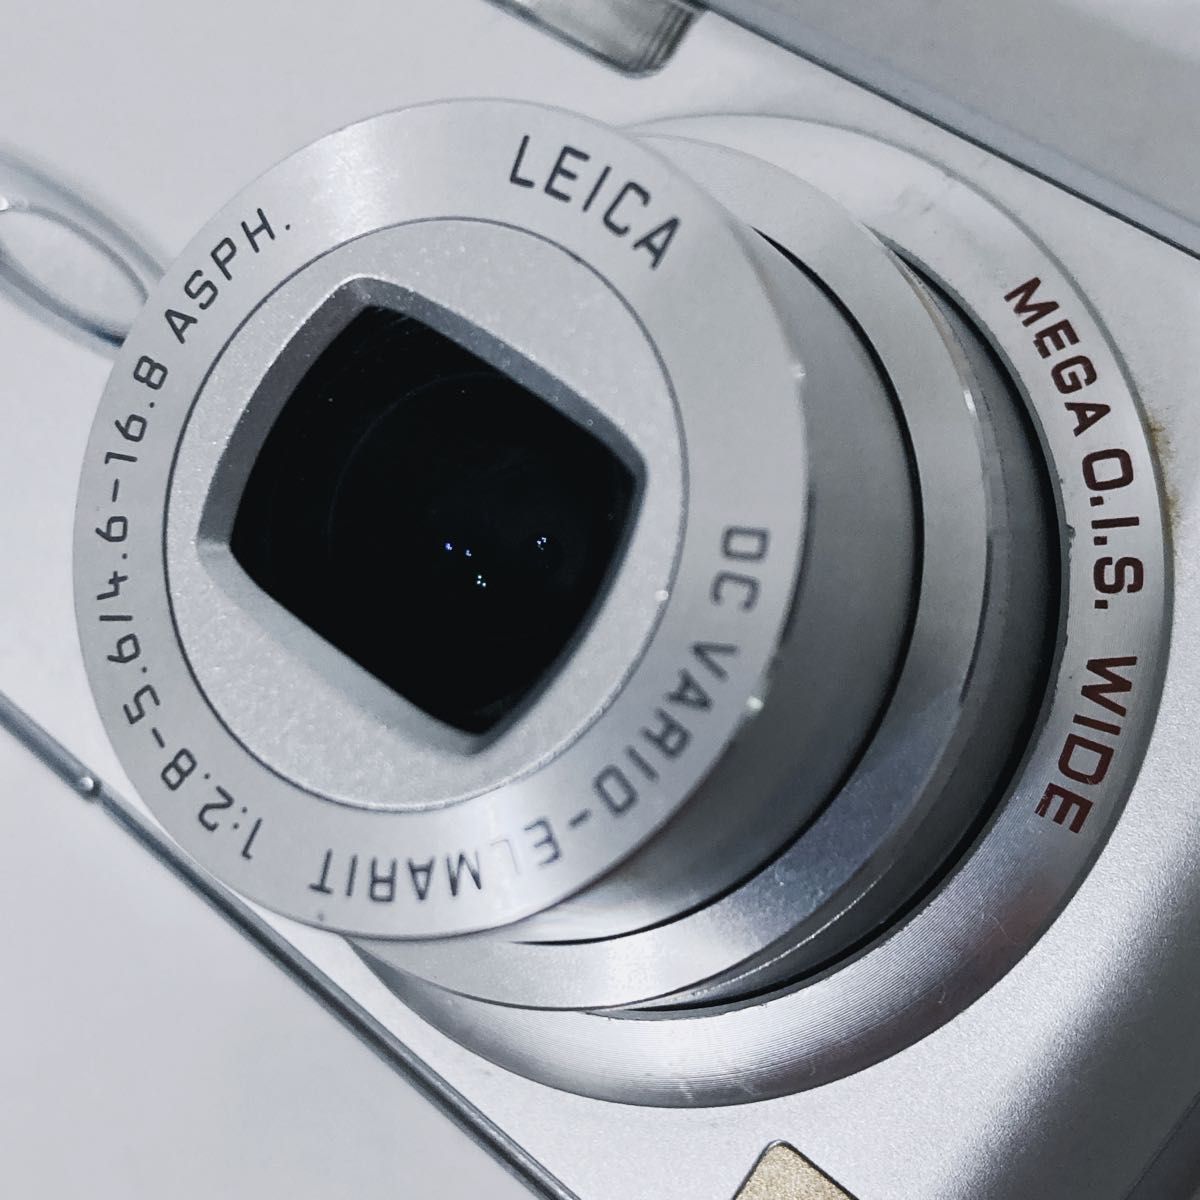 Panasonic LUMIX DMC-FS01 シルバー パナソニック ルミックス  デジタルカメラ